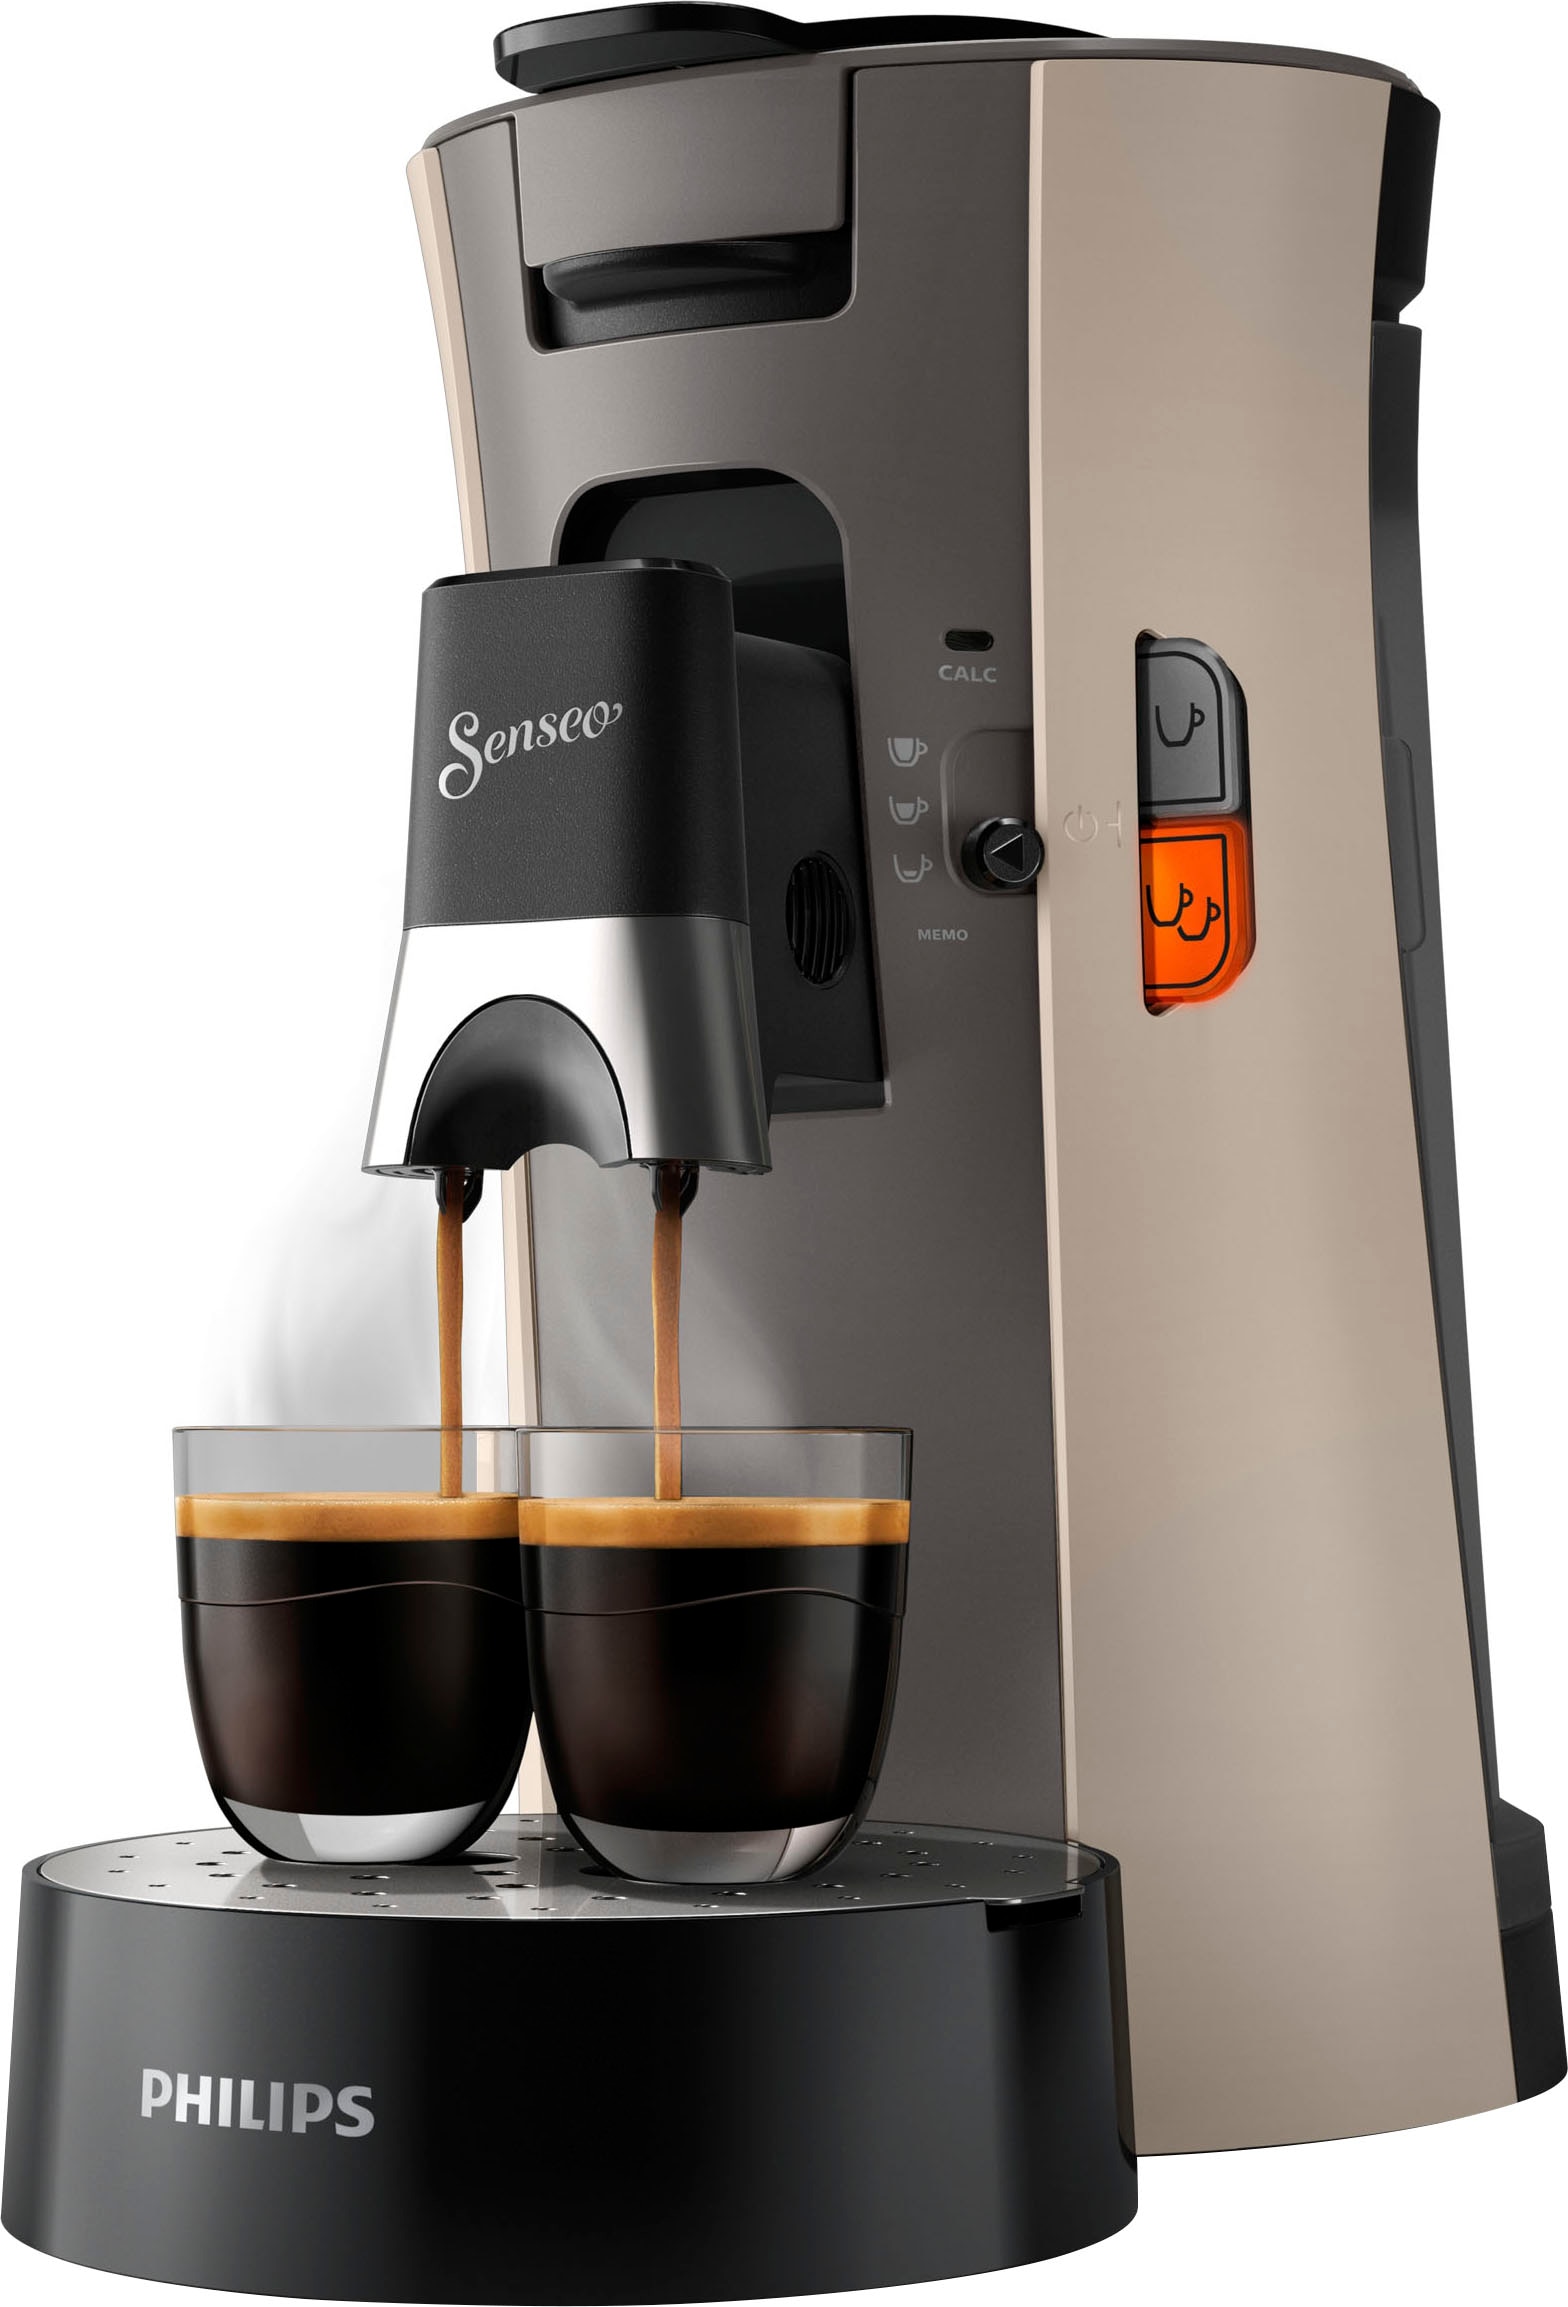 Philips Senseo 14,- Kaffeepadmaschine € XXL 3 mit »Select Garantie Jahren UVP inkl. von Gratis-Zugaben CSA240/30«, im Wert